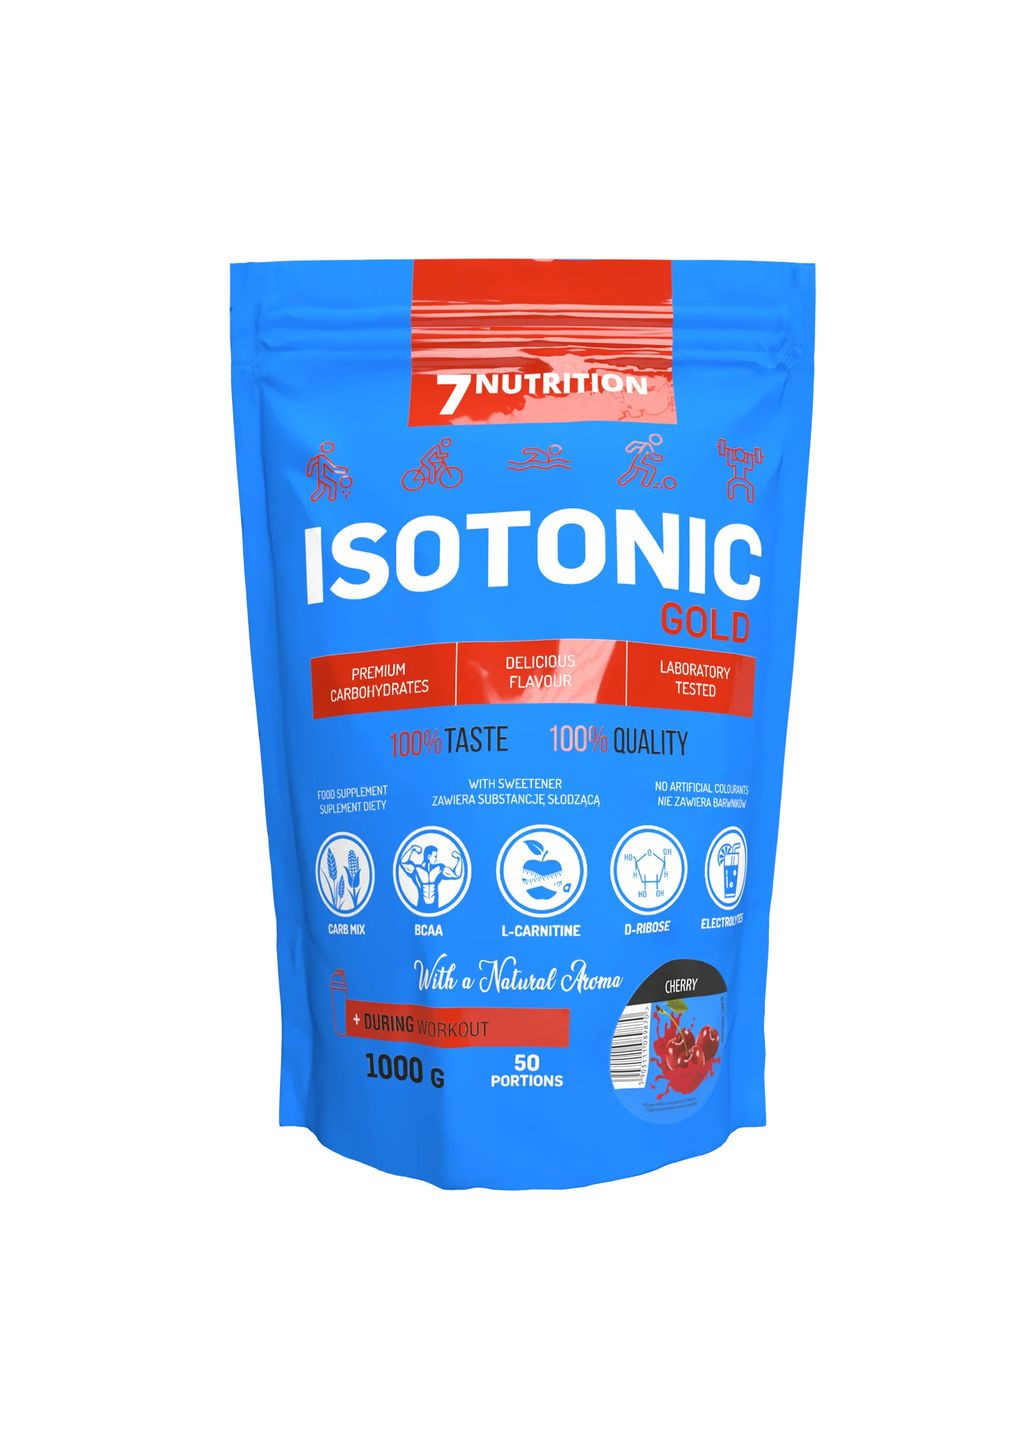 Изотонический напиток Isotonic Gold, 1000g (Cherry) 7 Nutrition (284729078)